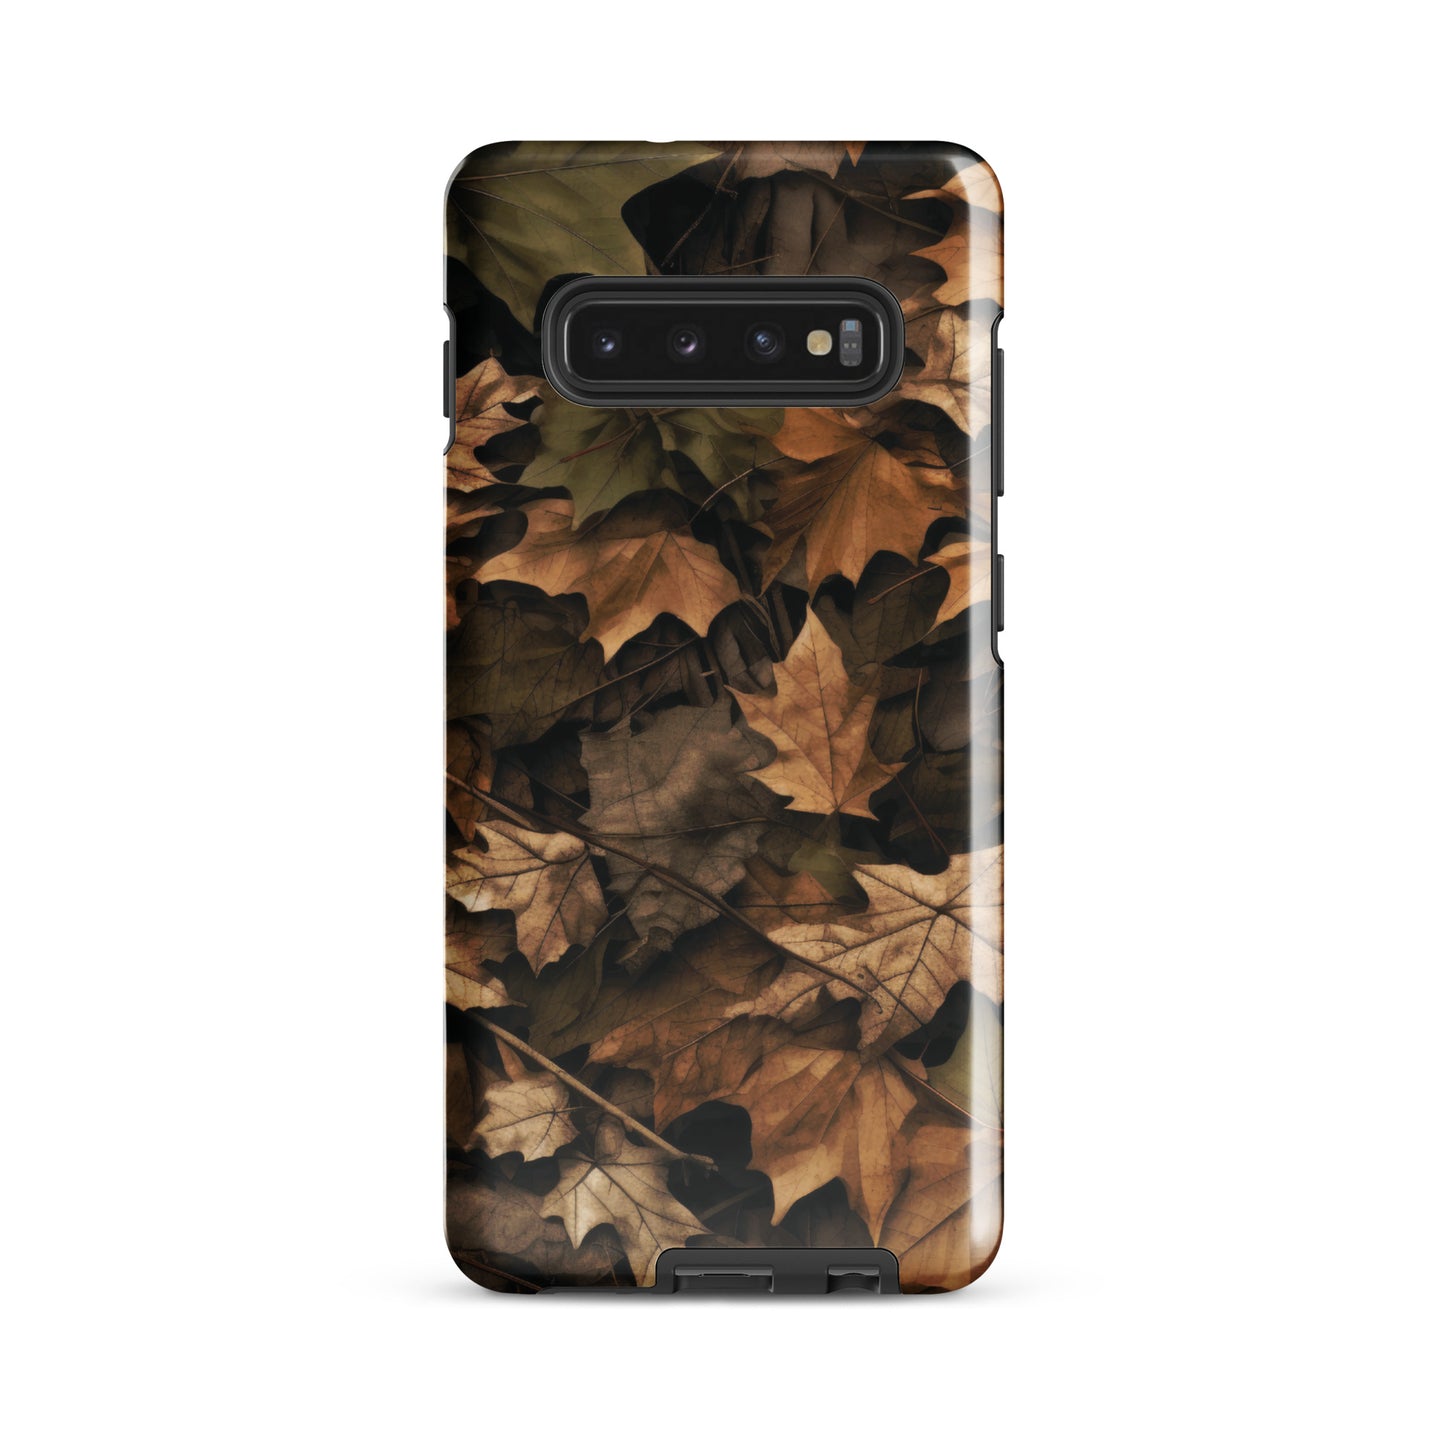 Autumn Ammo - Tough case for Samsung®